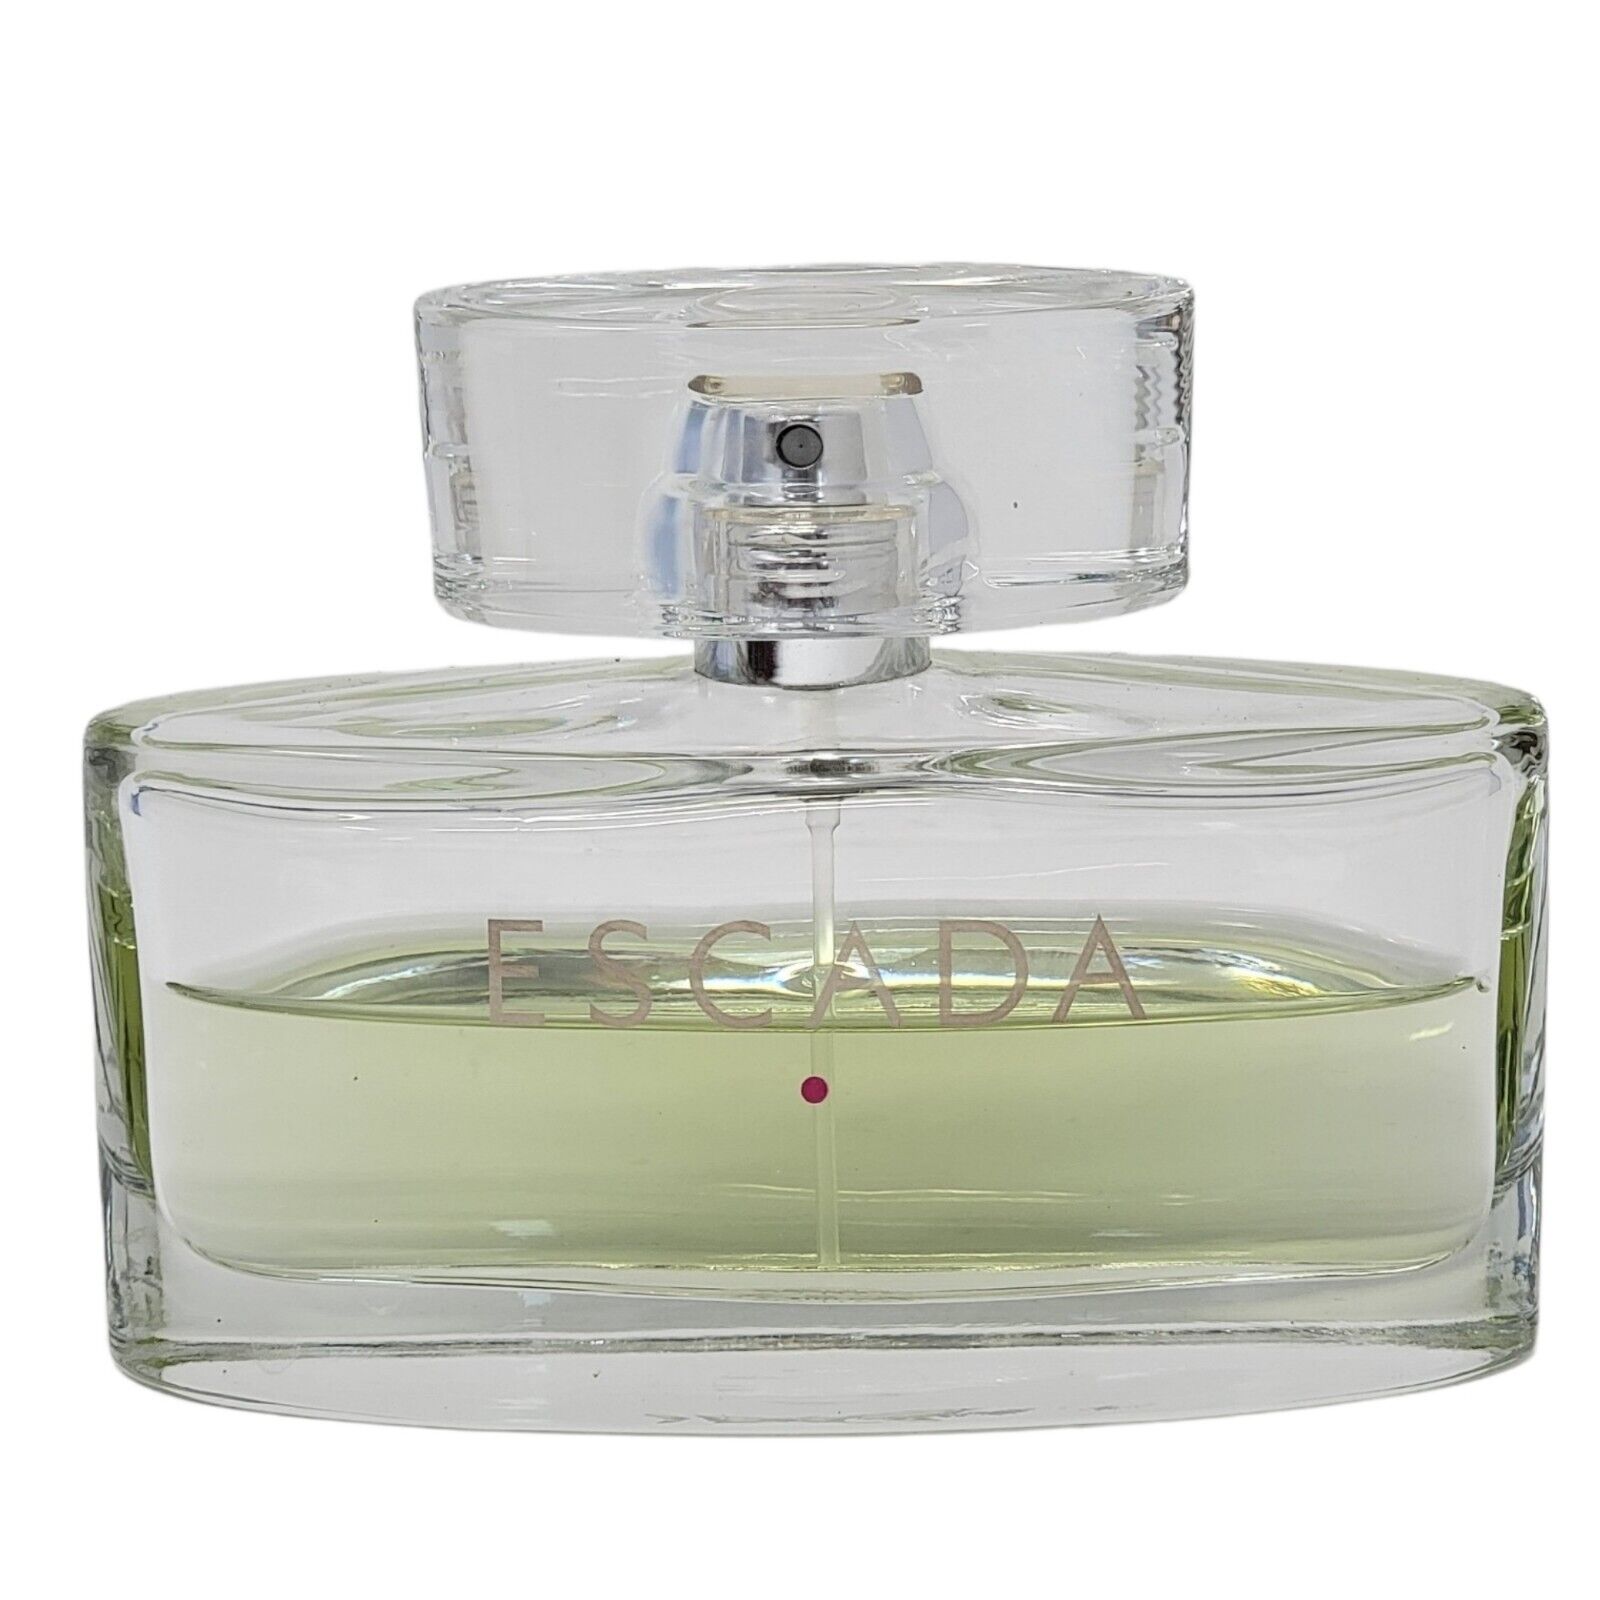 Escada Signature Womens Perfume 2.5oz/75ml EDP Spray Rare Discontinued